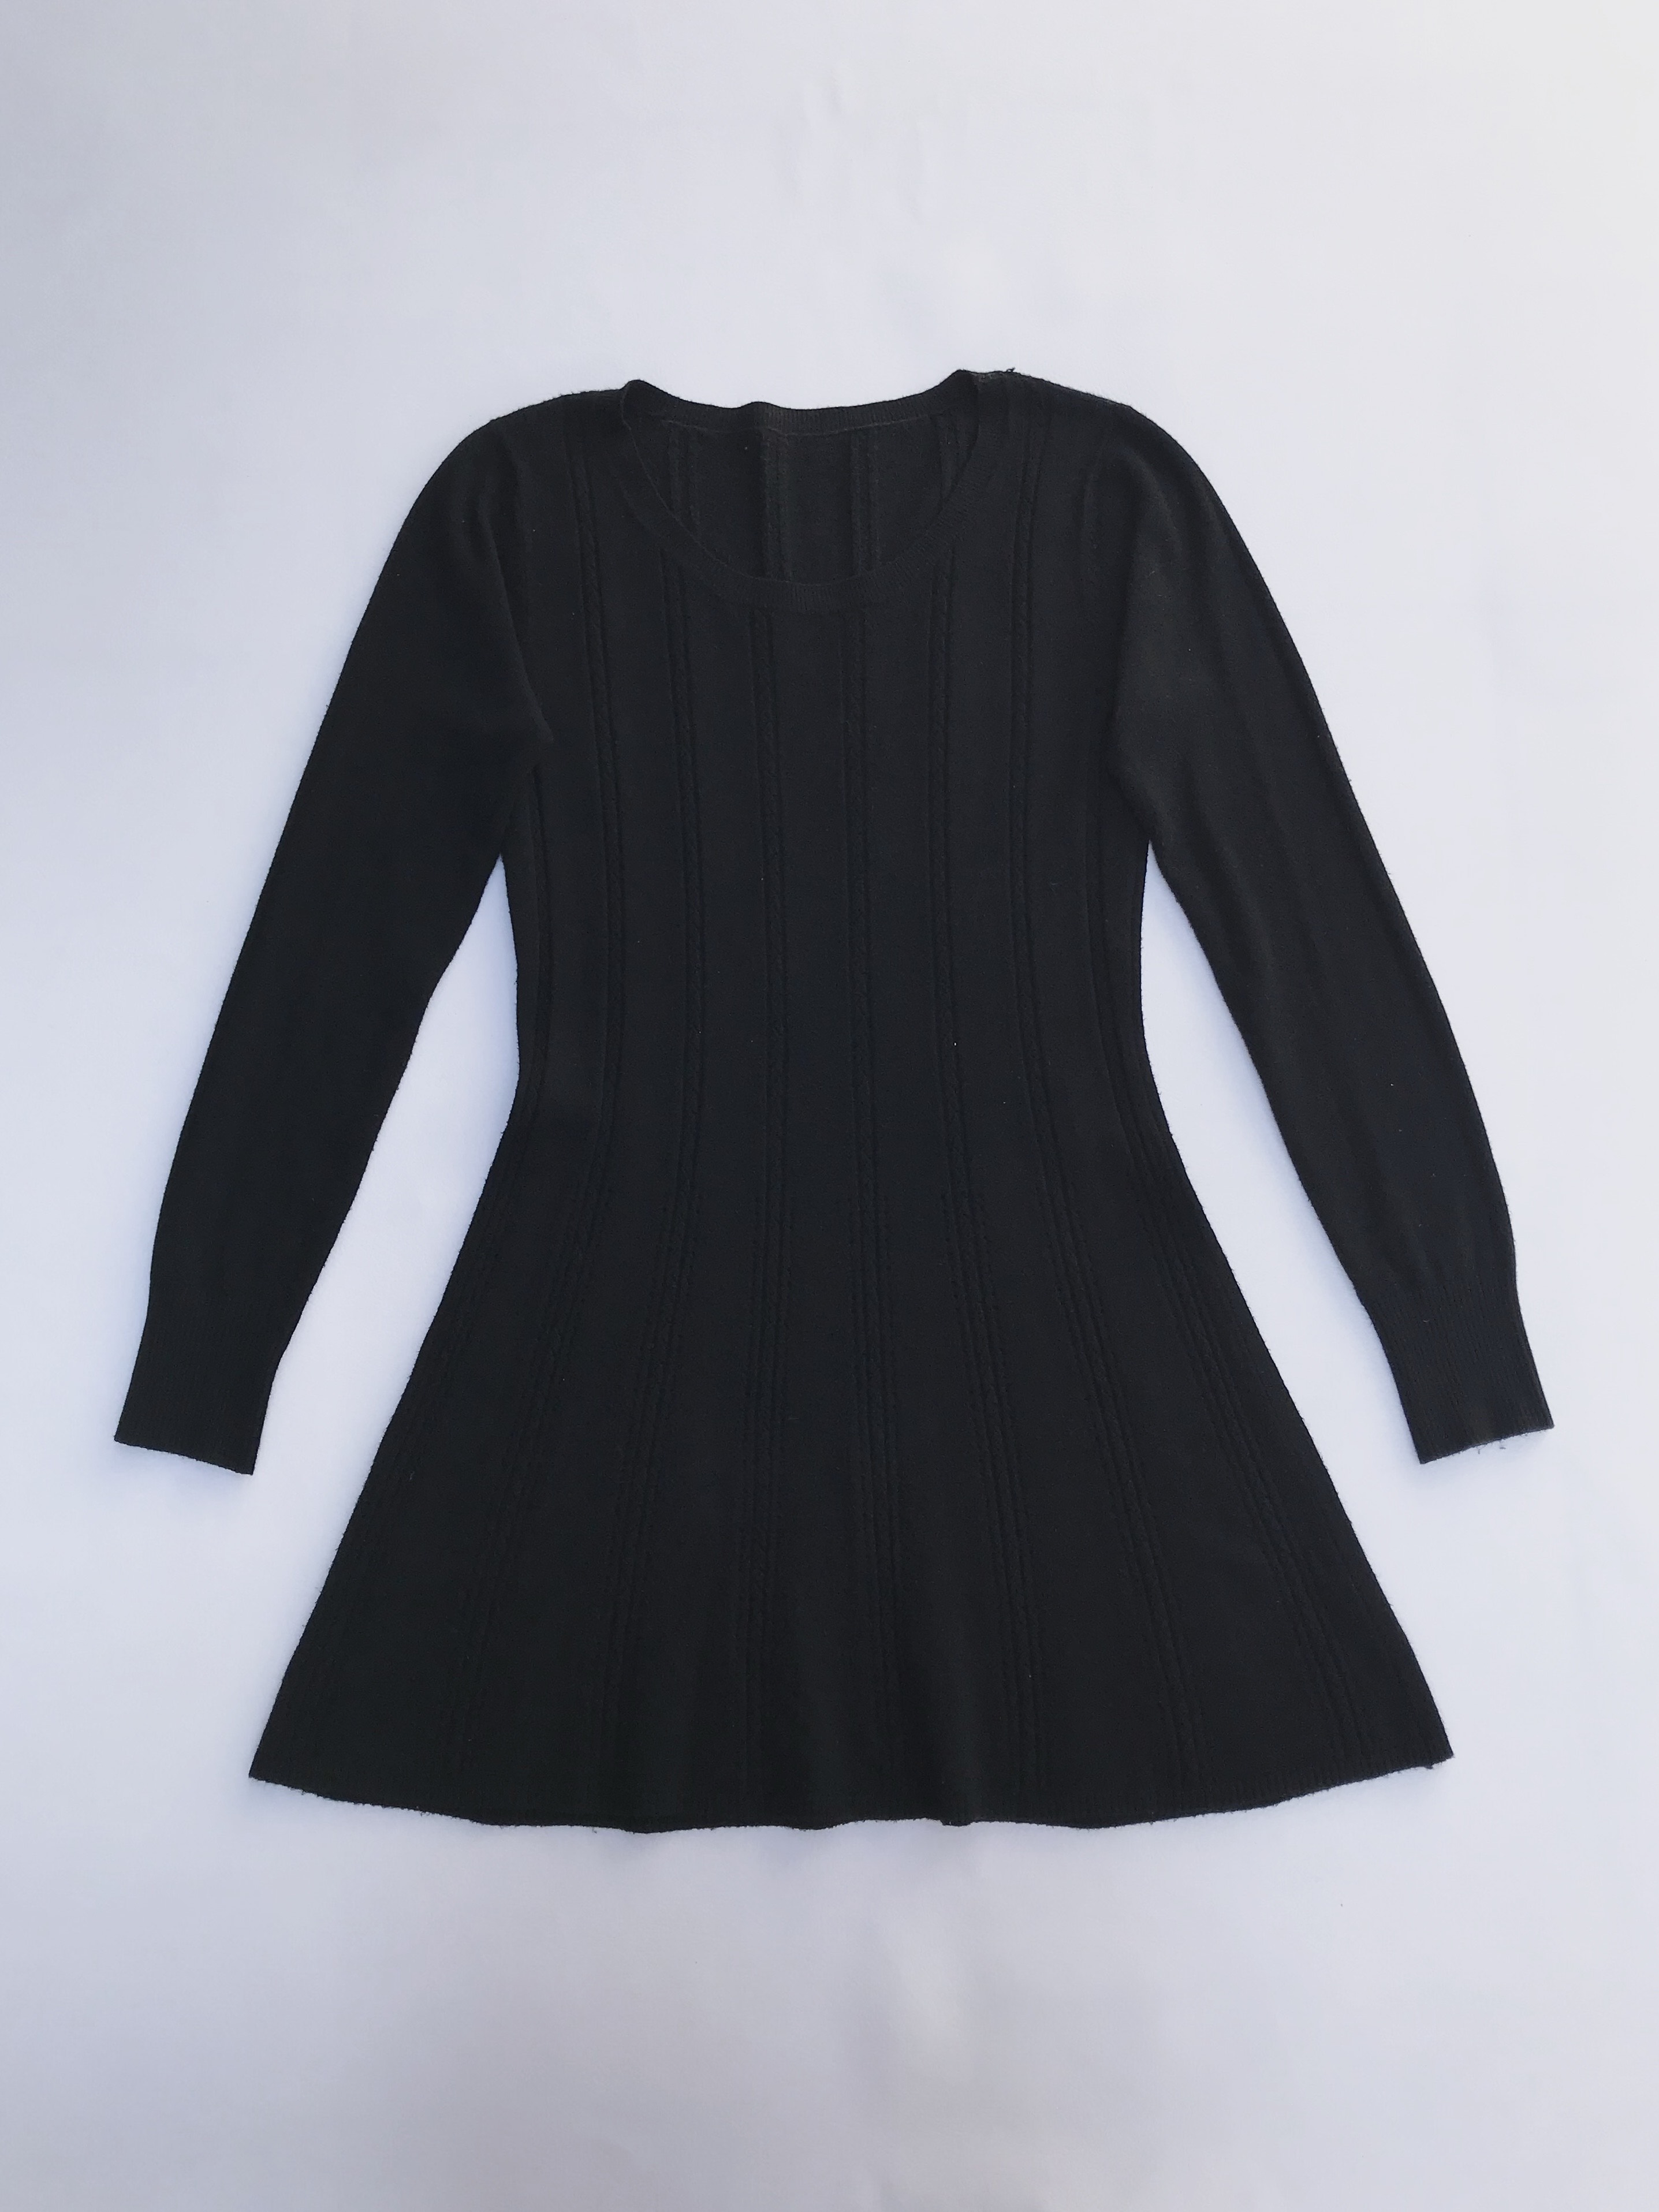 Chompa larga tipo vestido negra con franjas de textura trenzada y puntitos calados
Talla S